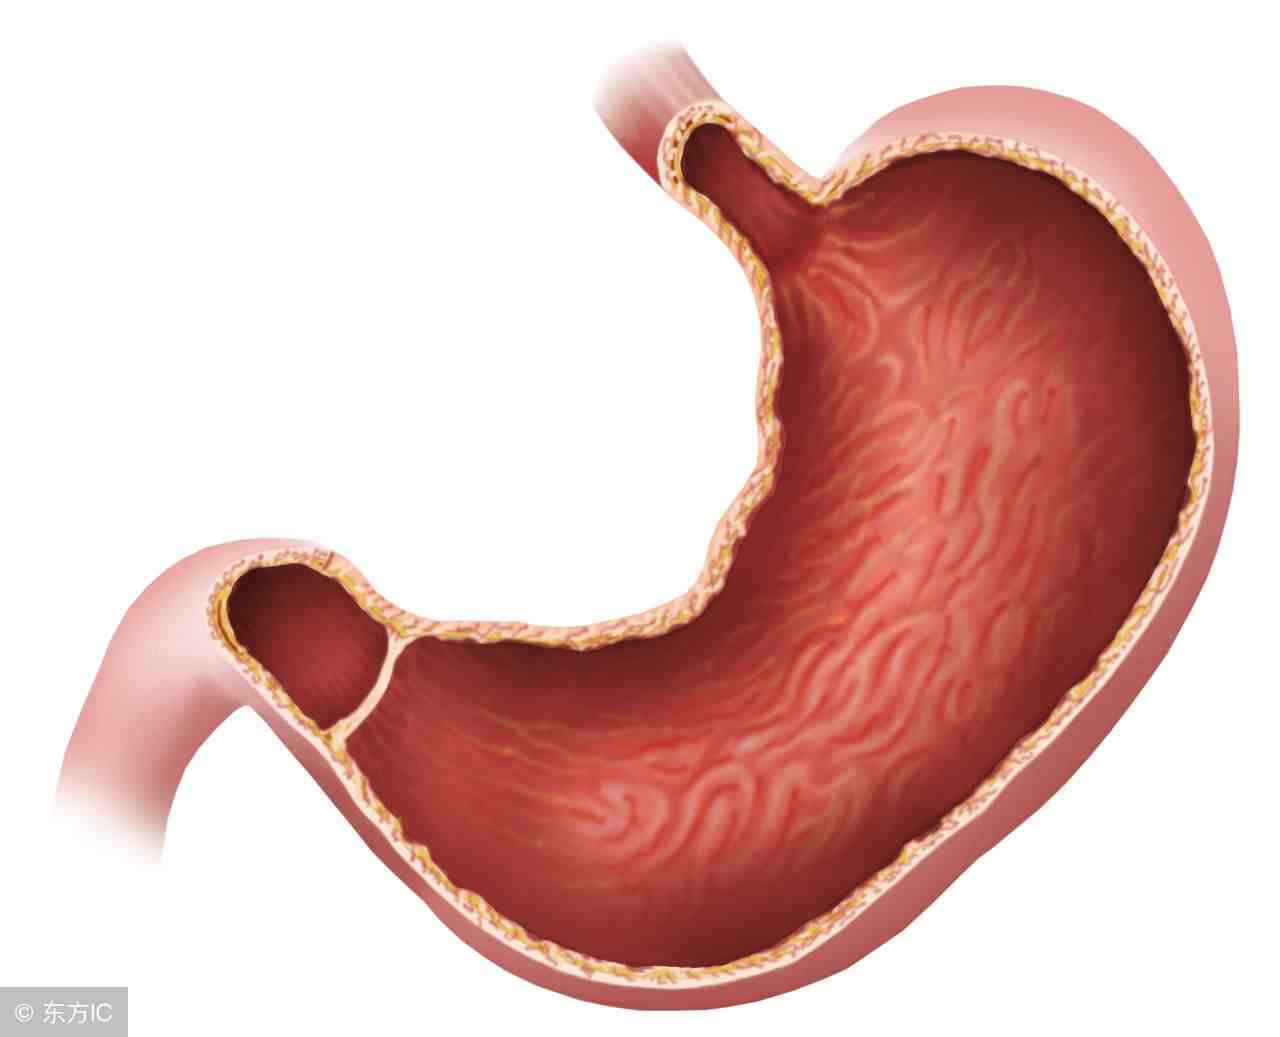 胃窦炎是什么意思呢？如何有效预防胃窦炎？